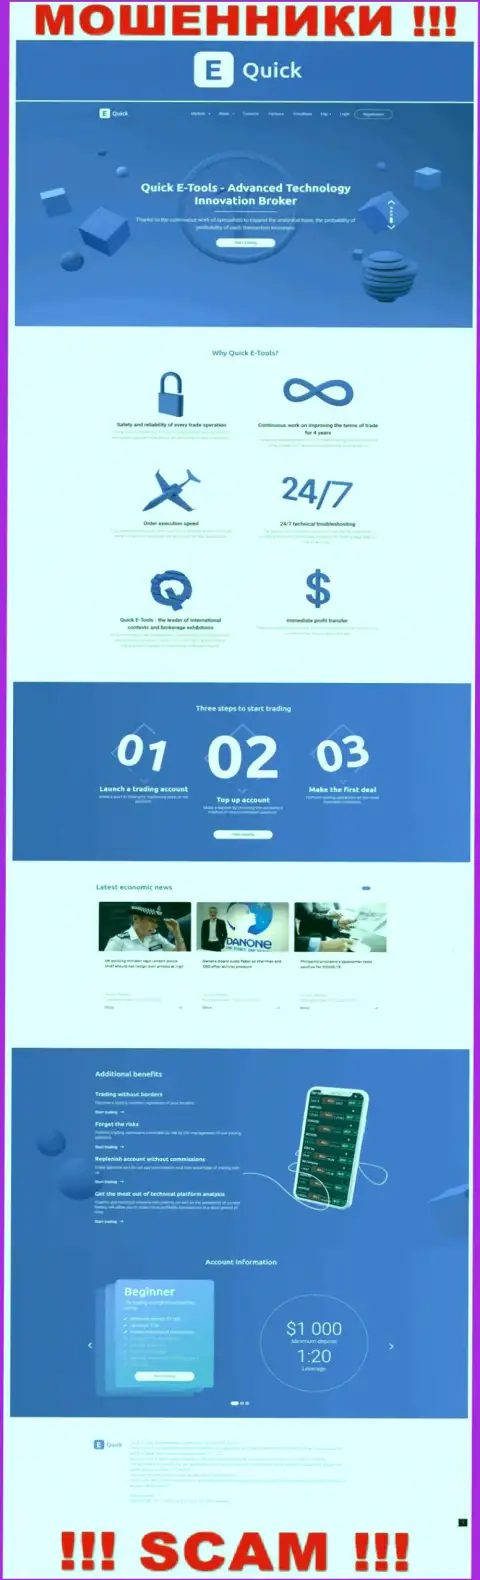 QuickETools Com - это сайт компании КвикЕТулс, обычная страничка мошенников